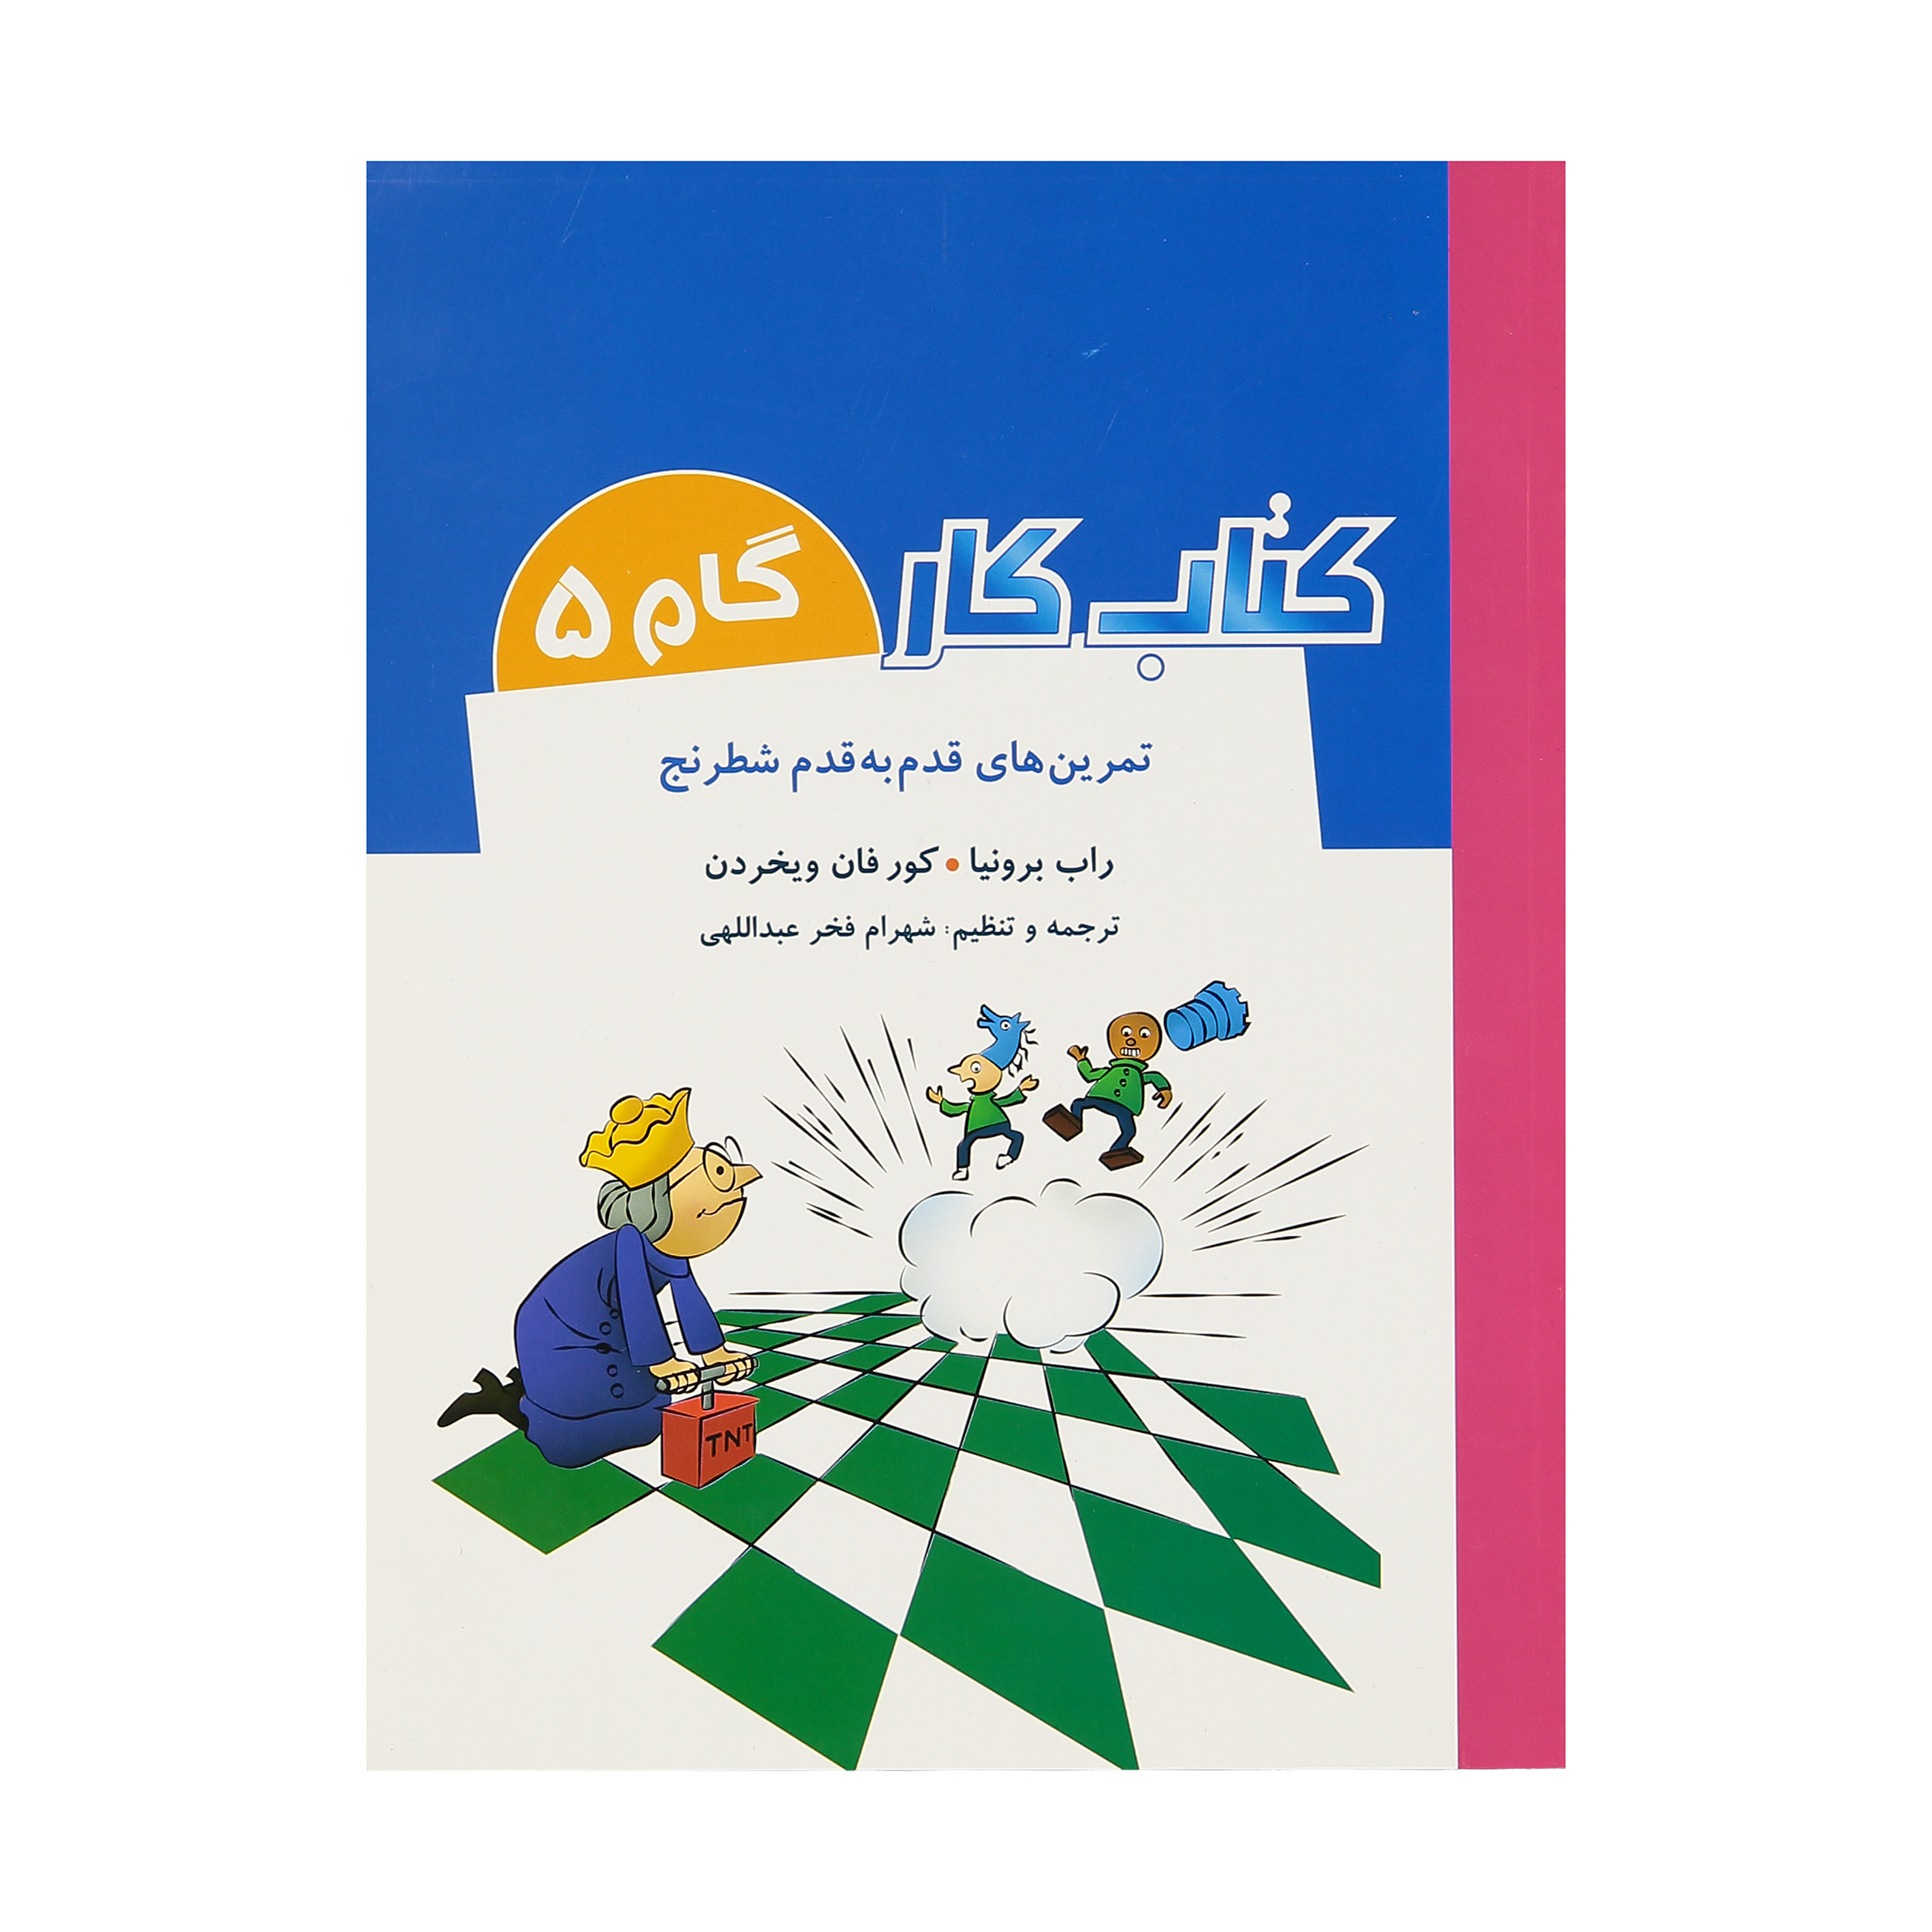 کتاب تمرین های قدم به قدم شطرنج کتاب کار گام 5 اثر راب برونیا و کور فان ویخردن انتشارات شباهنگ